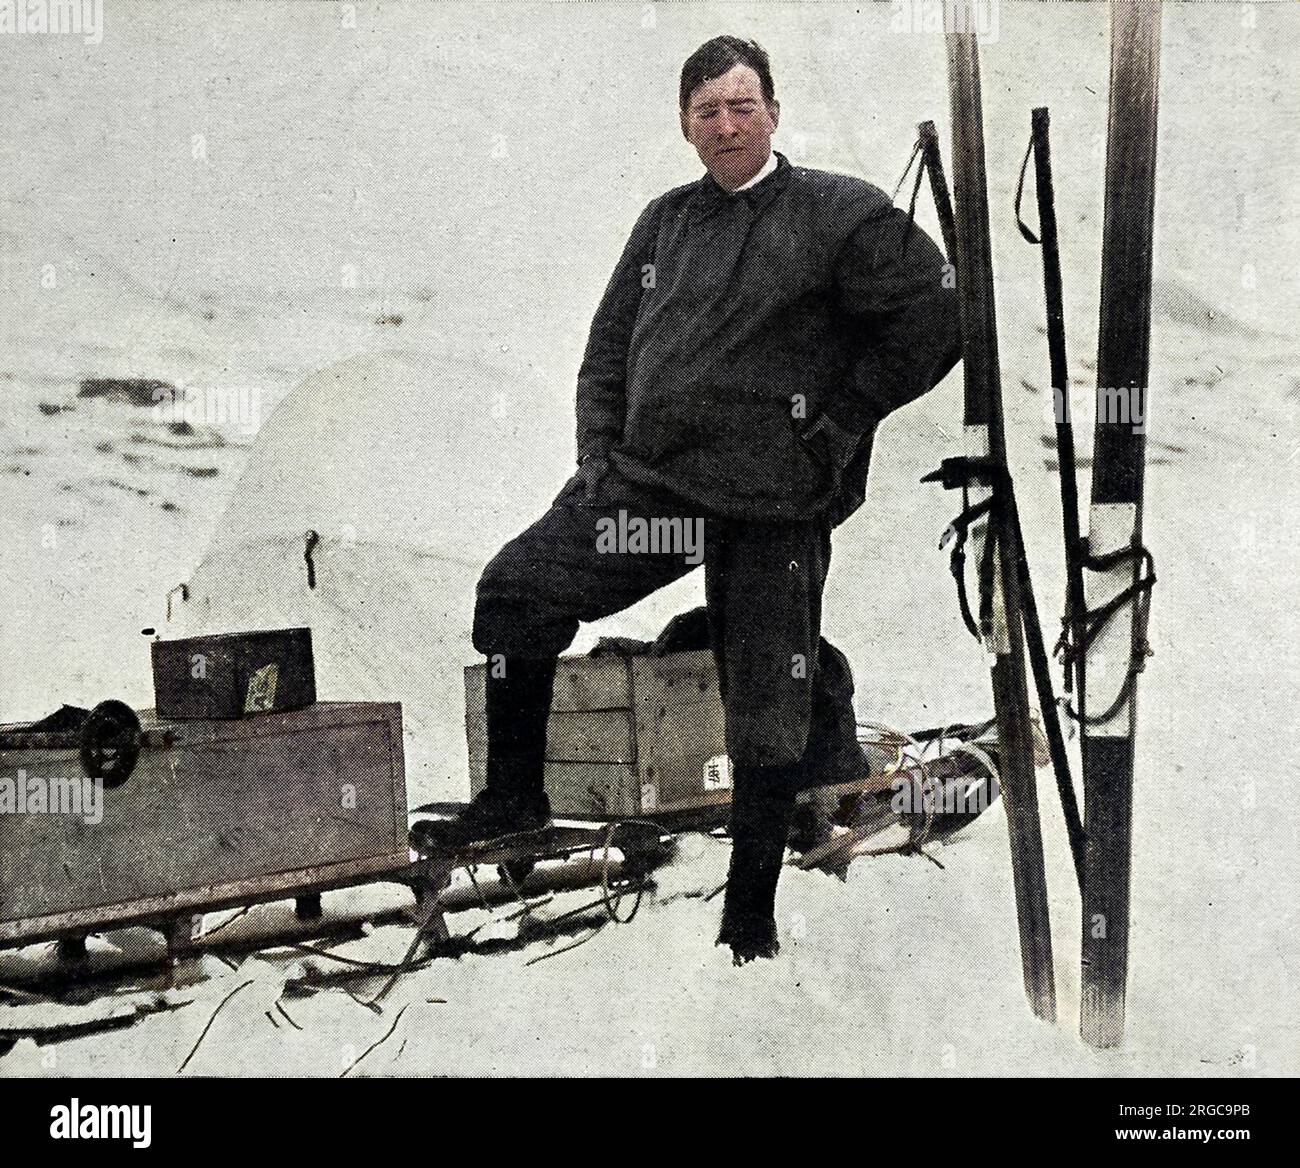 Sir Ernest Shackleton, vêtu d'un kit adapté aux conditions antarctiques avant son expédition transantarctique en 1914. Banque D'Images